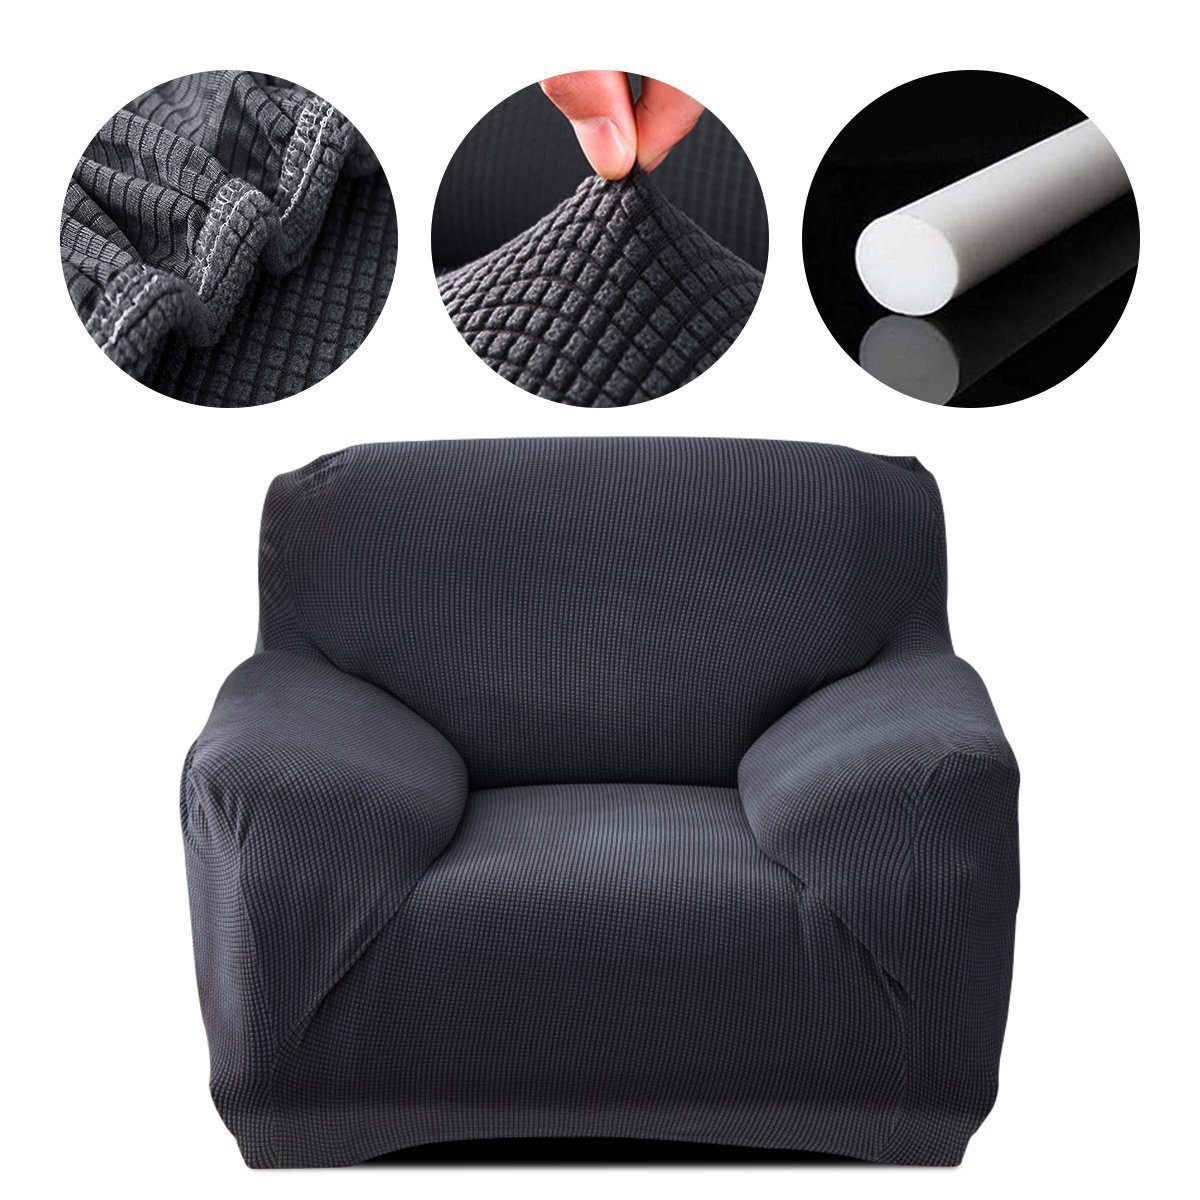 Sofahusse Sofahusse Stretch Sofa Abdeckung mit Elastische, MULISOFT, Sofabezug 1/2/3/4 Sitzer Stretch Schonbezug Couchbezug dunkelgrau